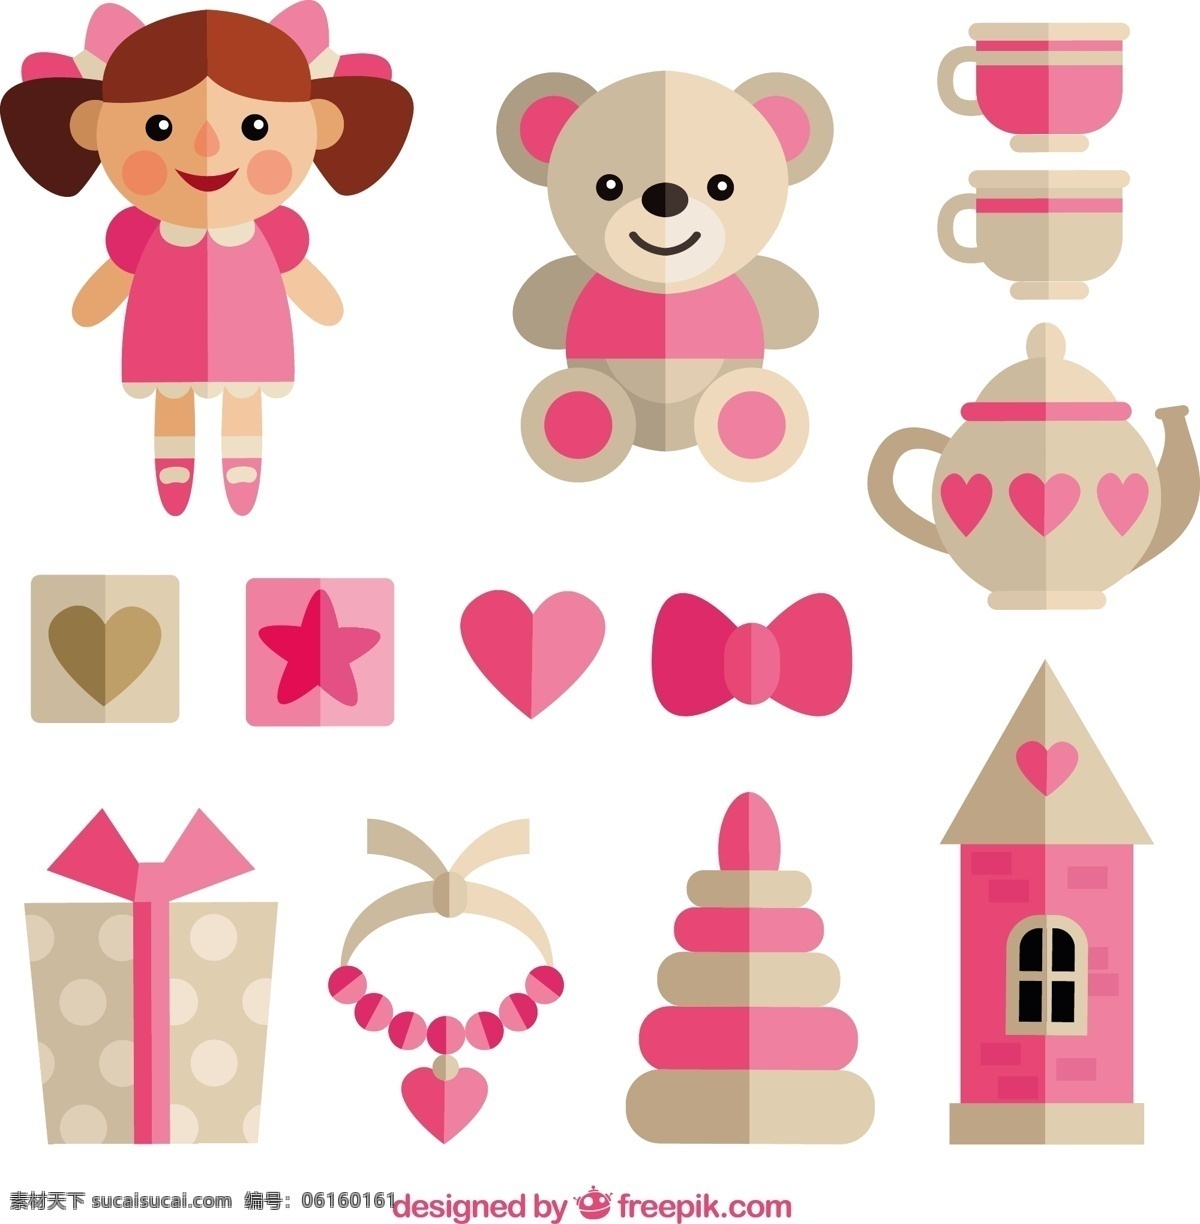 粉色女孩玩具 粉红色 扁平 可爱 公主 城堡 玩具 平面设计 播放 娱乐 搞笑 泰迪 玩偶 女孩